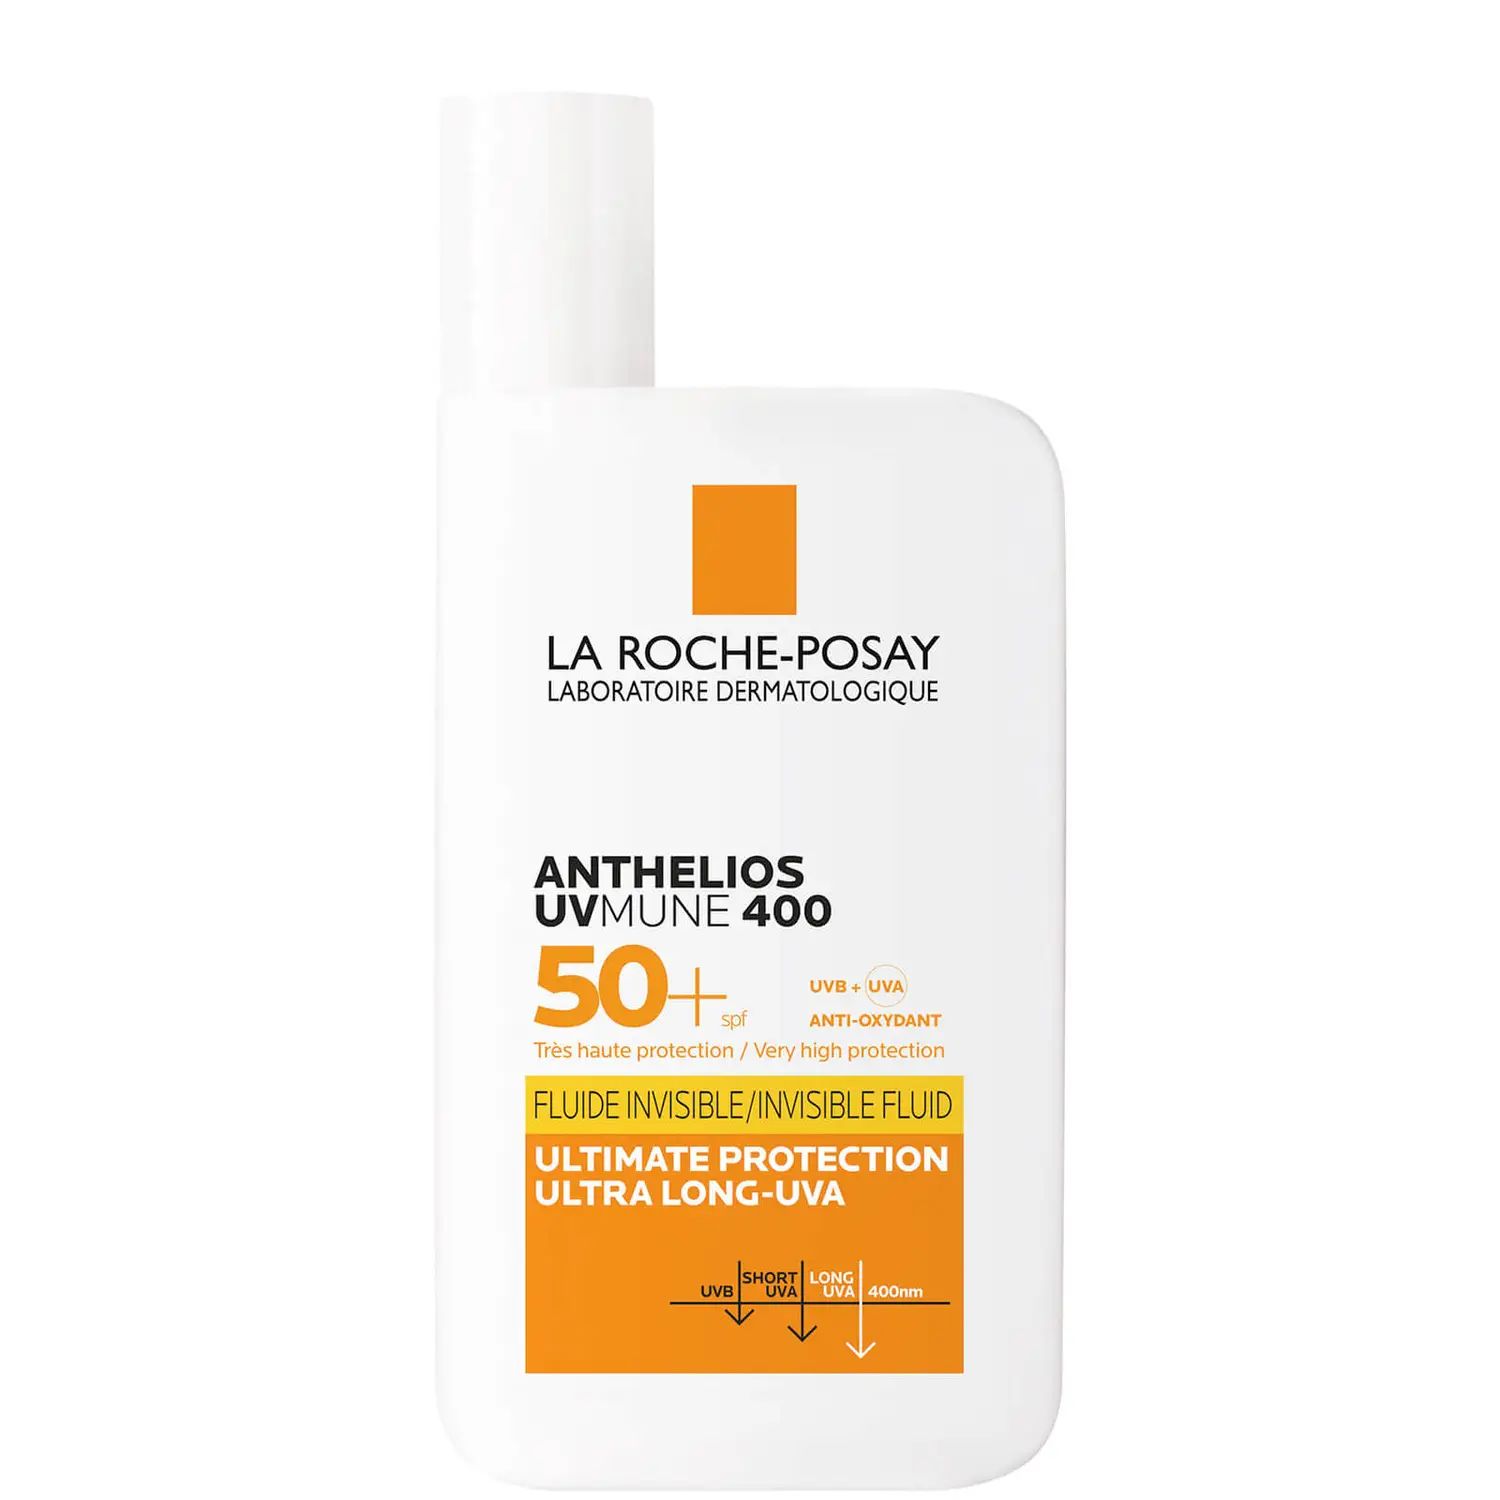 La Roche-Posay Anthelios UVMune 400 Invisible Fluid SPF50+ Sun Cream 50ml | Cult Beauty